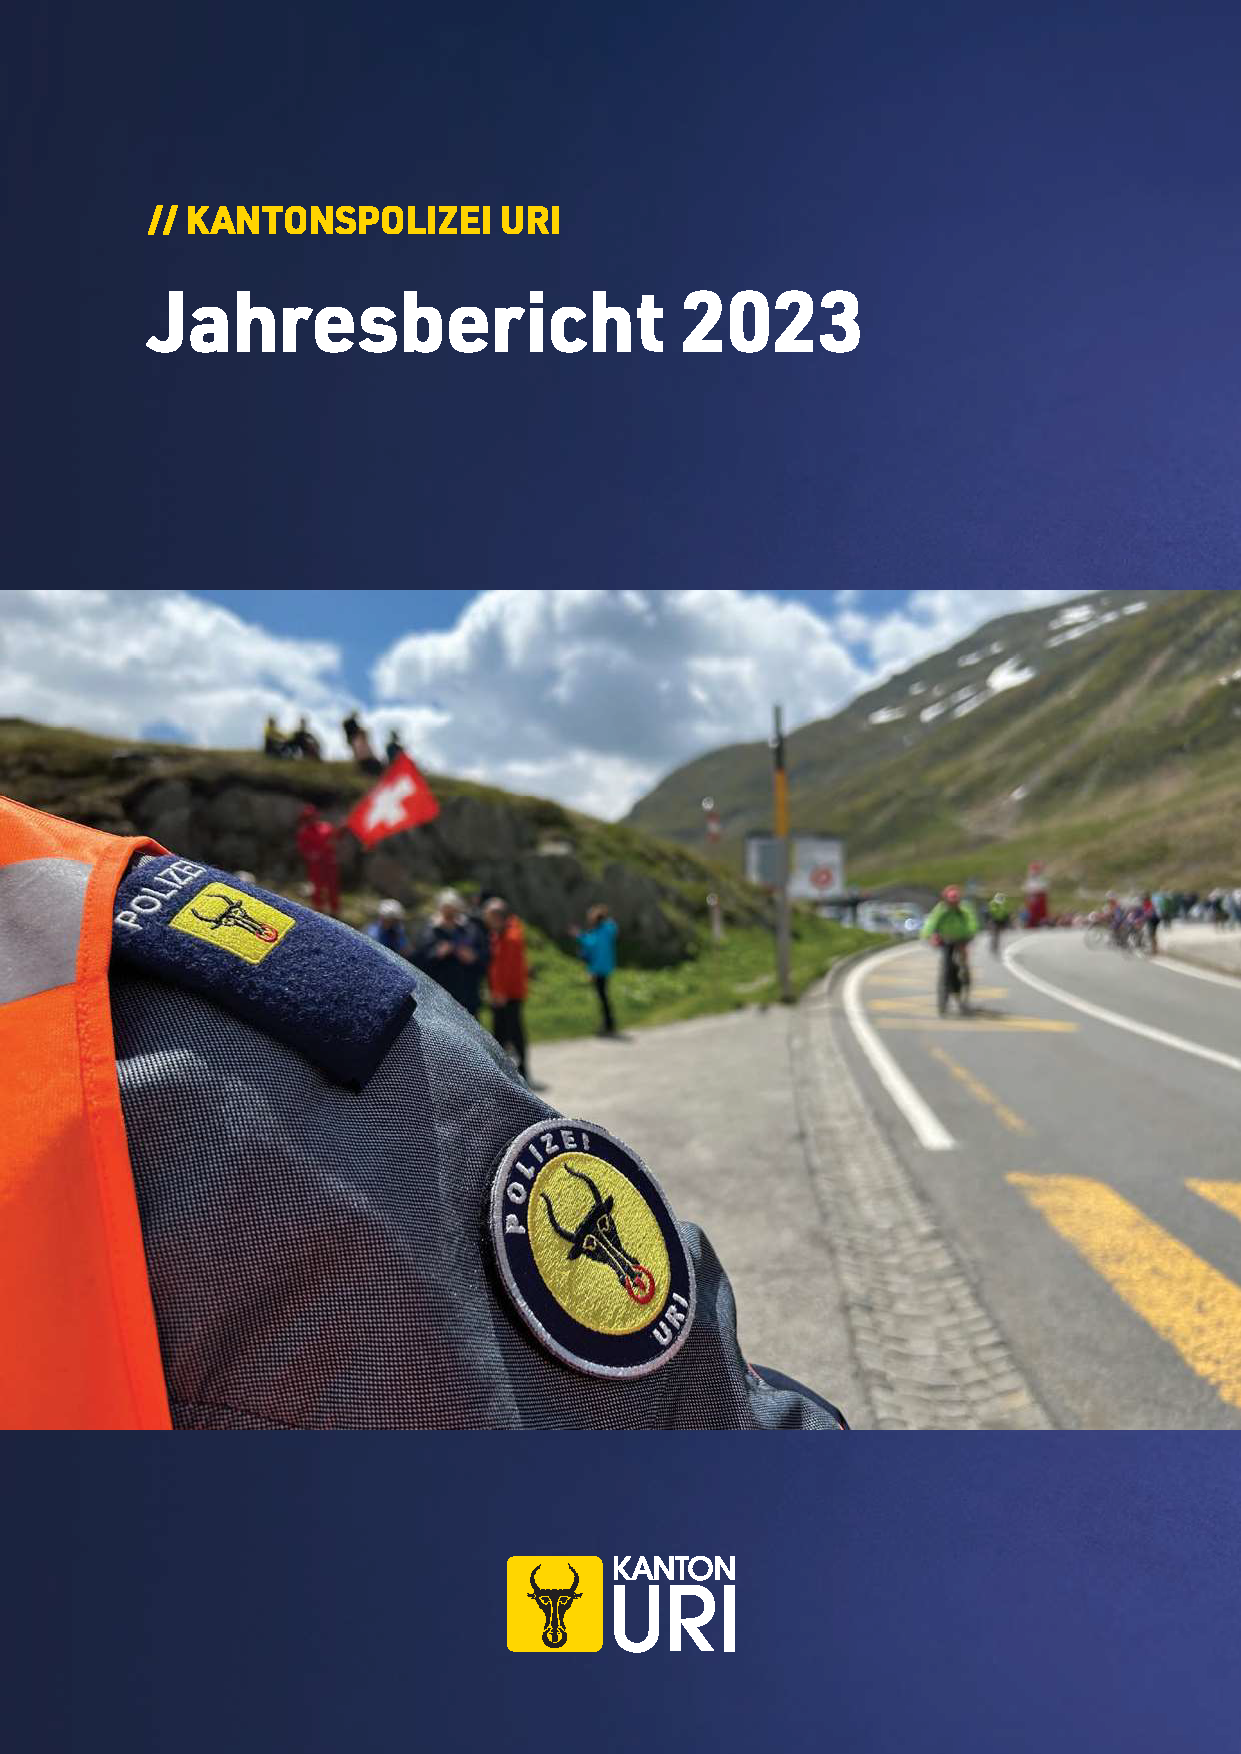 Sicherheit im Kanton Uri – Jahresbericht und polizeiliche Statistiken 2023